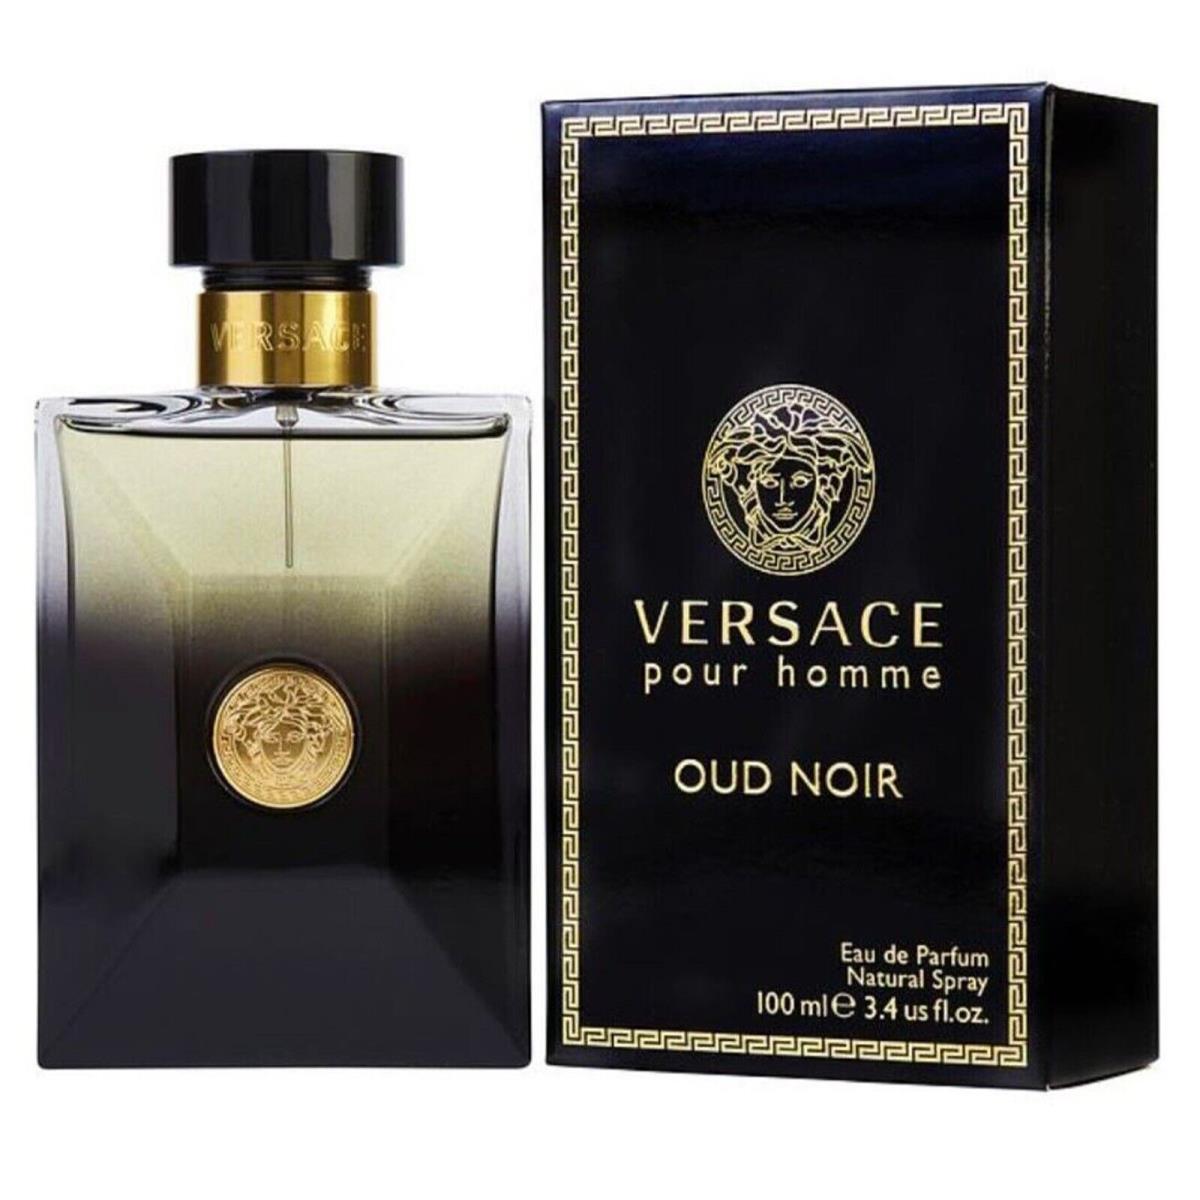 Versace Pour Homme Oud Noir Cologne Men Perfume by Versace Edp Spray 3.4 oz